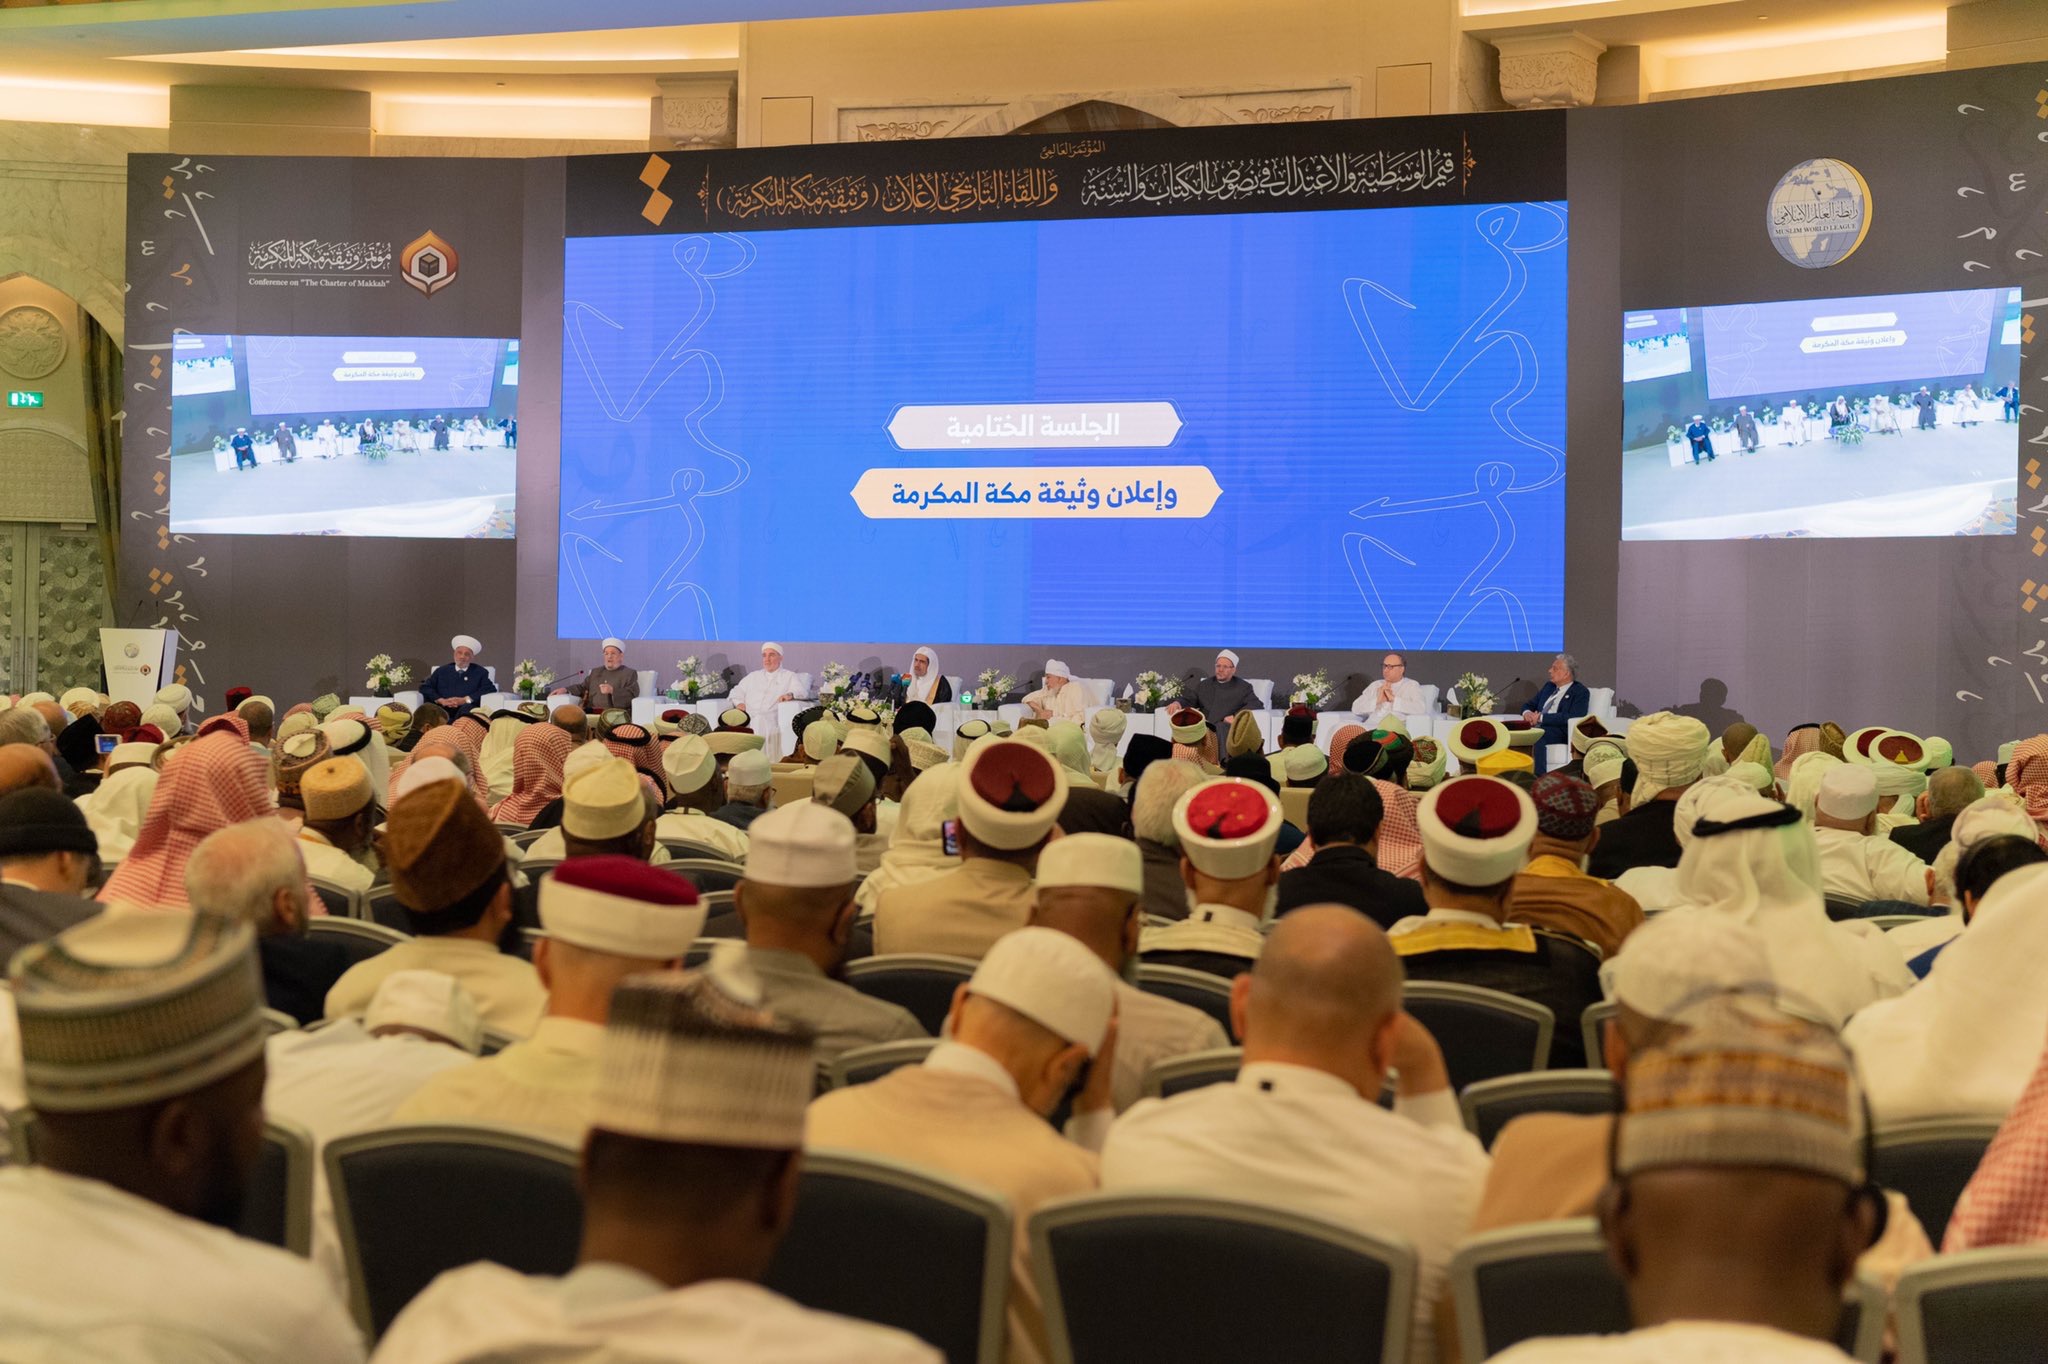 Les muftis de la Oumma et ses grands savants annoncent la Charte Mecque à la fin de leur congrès près de la Kaaba qui est leur référence spirituelle et la quibla fédératrice des musulmans.